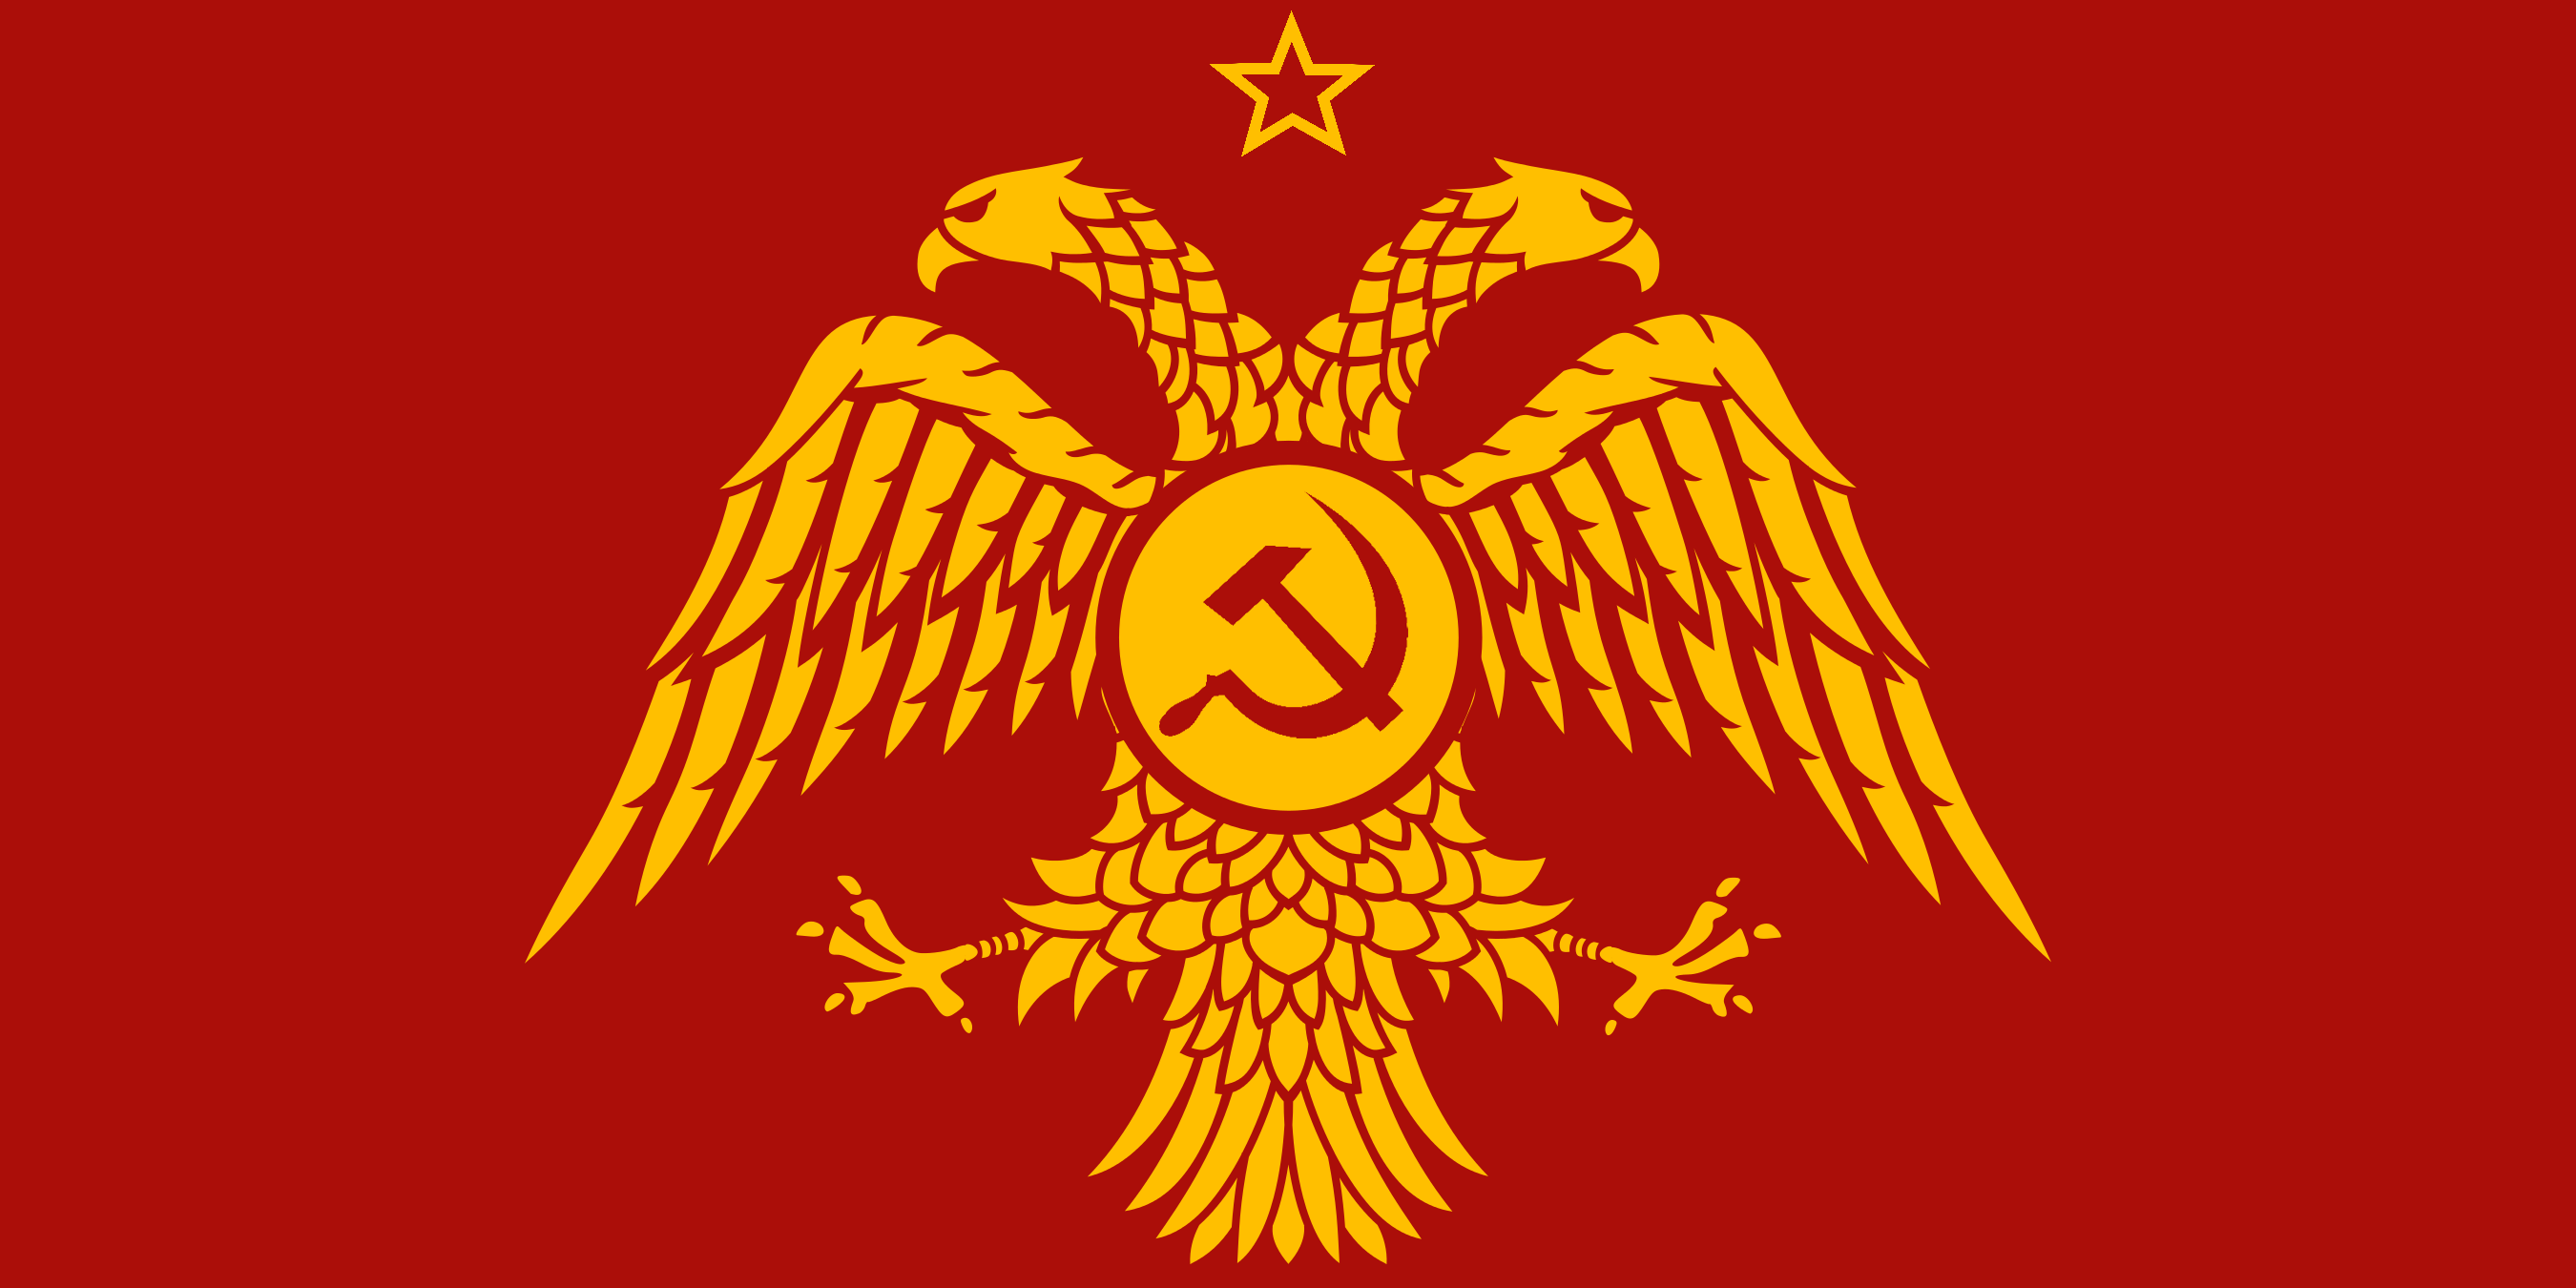 Communist Byzantine flag by K Haderach on